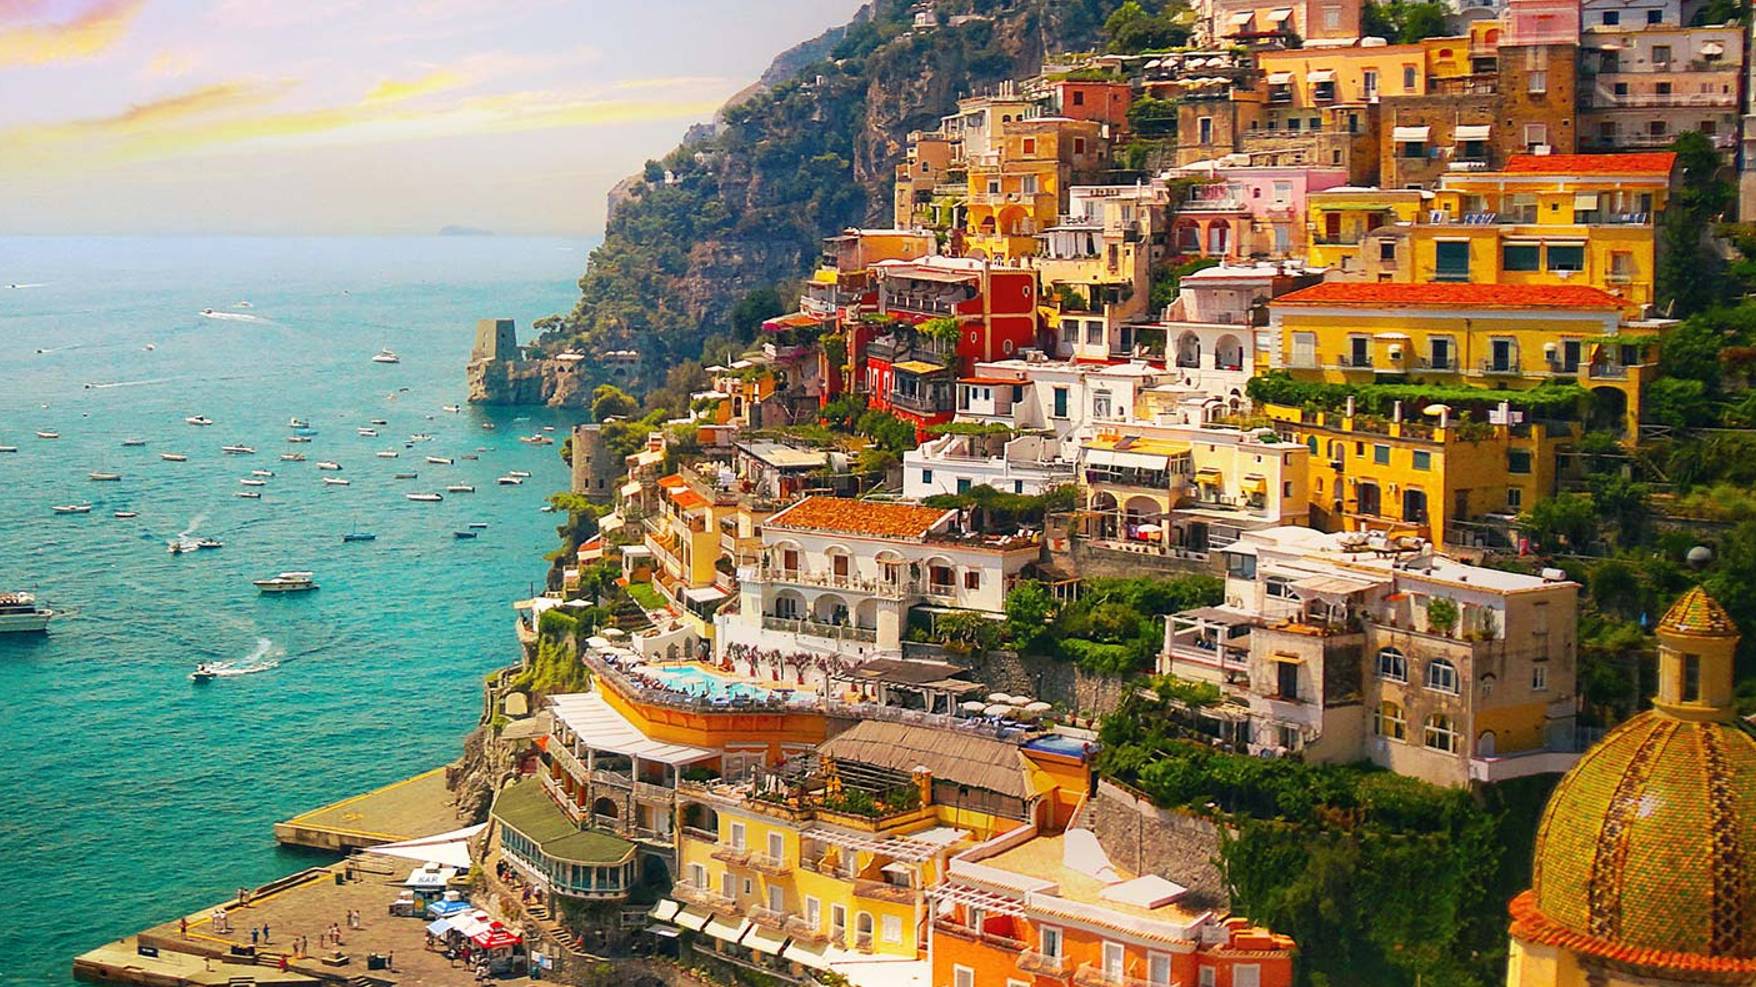 Красота Амальфи (Amalfi) — прекрасный приморский город у Салернского залива. Вечерняя прогулка